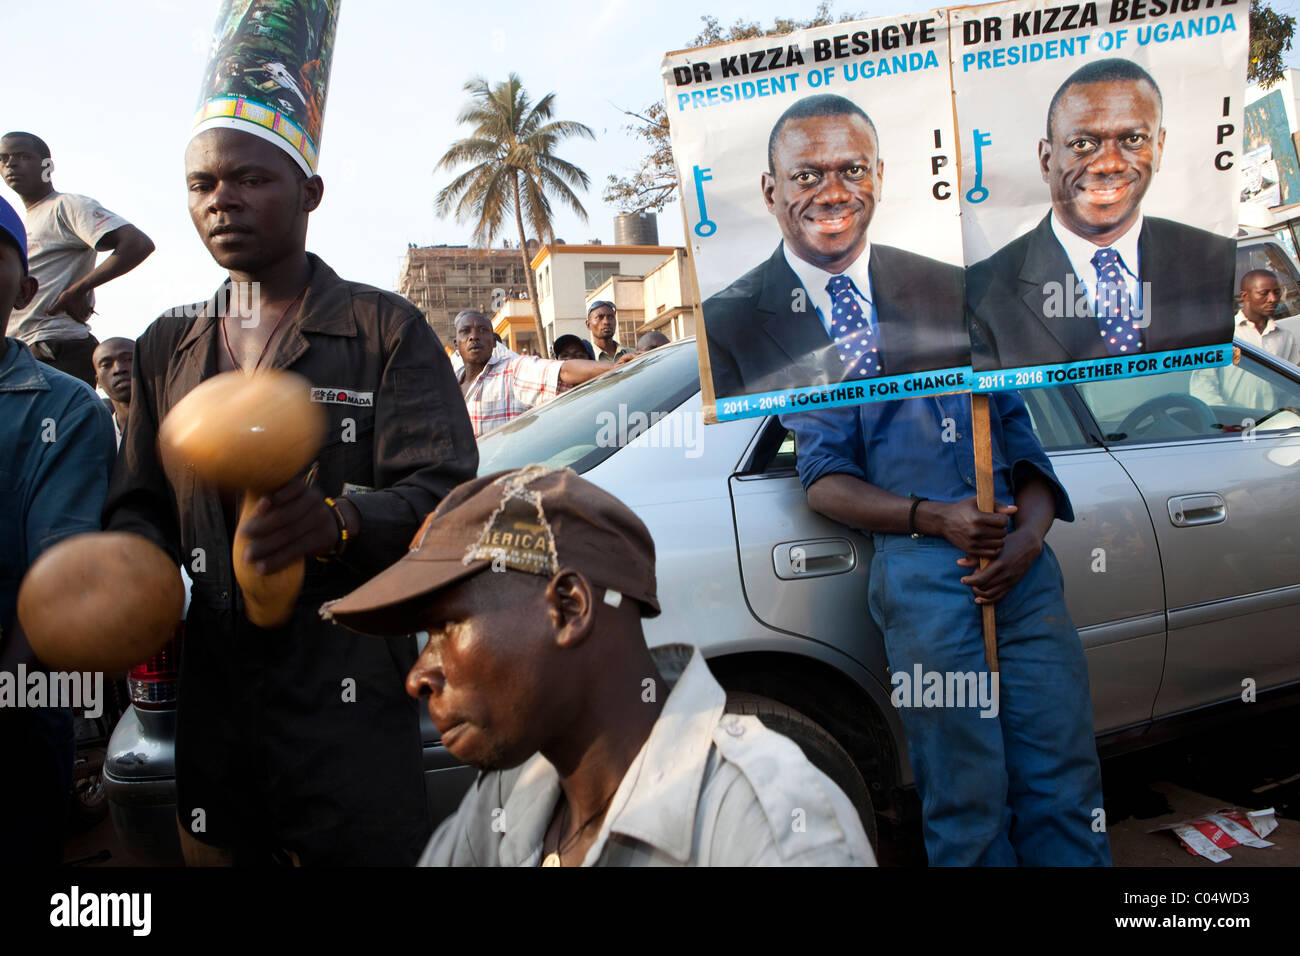 Les partisans du candidat à la présidence de l'Ouganda Le Dr Kizza Besigye emplissent les rues de Kampala comme il l'avance sur les campagnes du vote de vendredi Banque D'Images